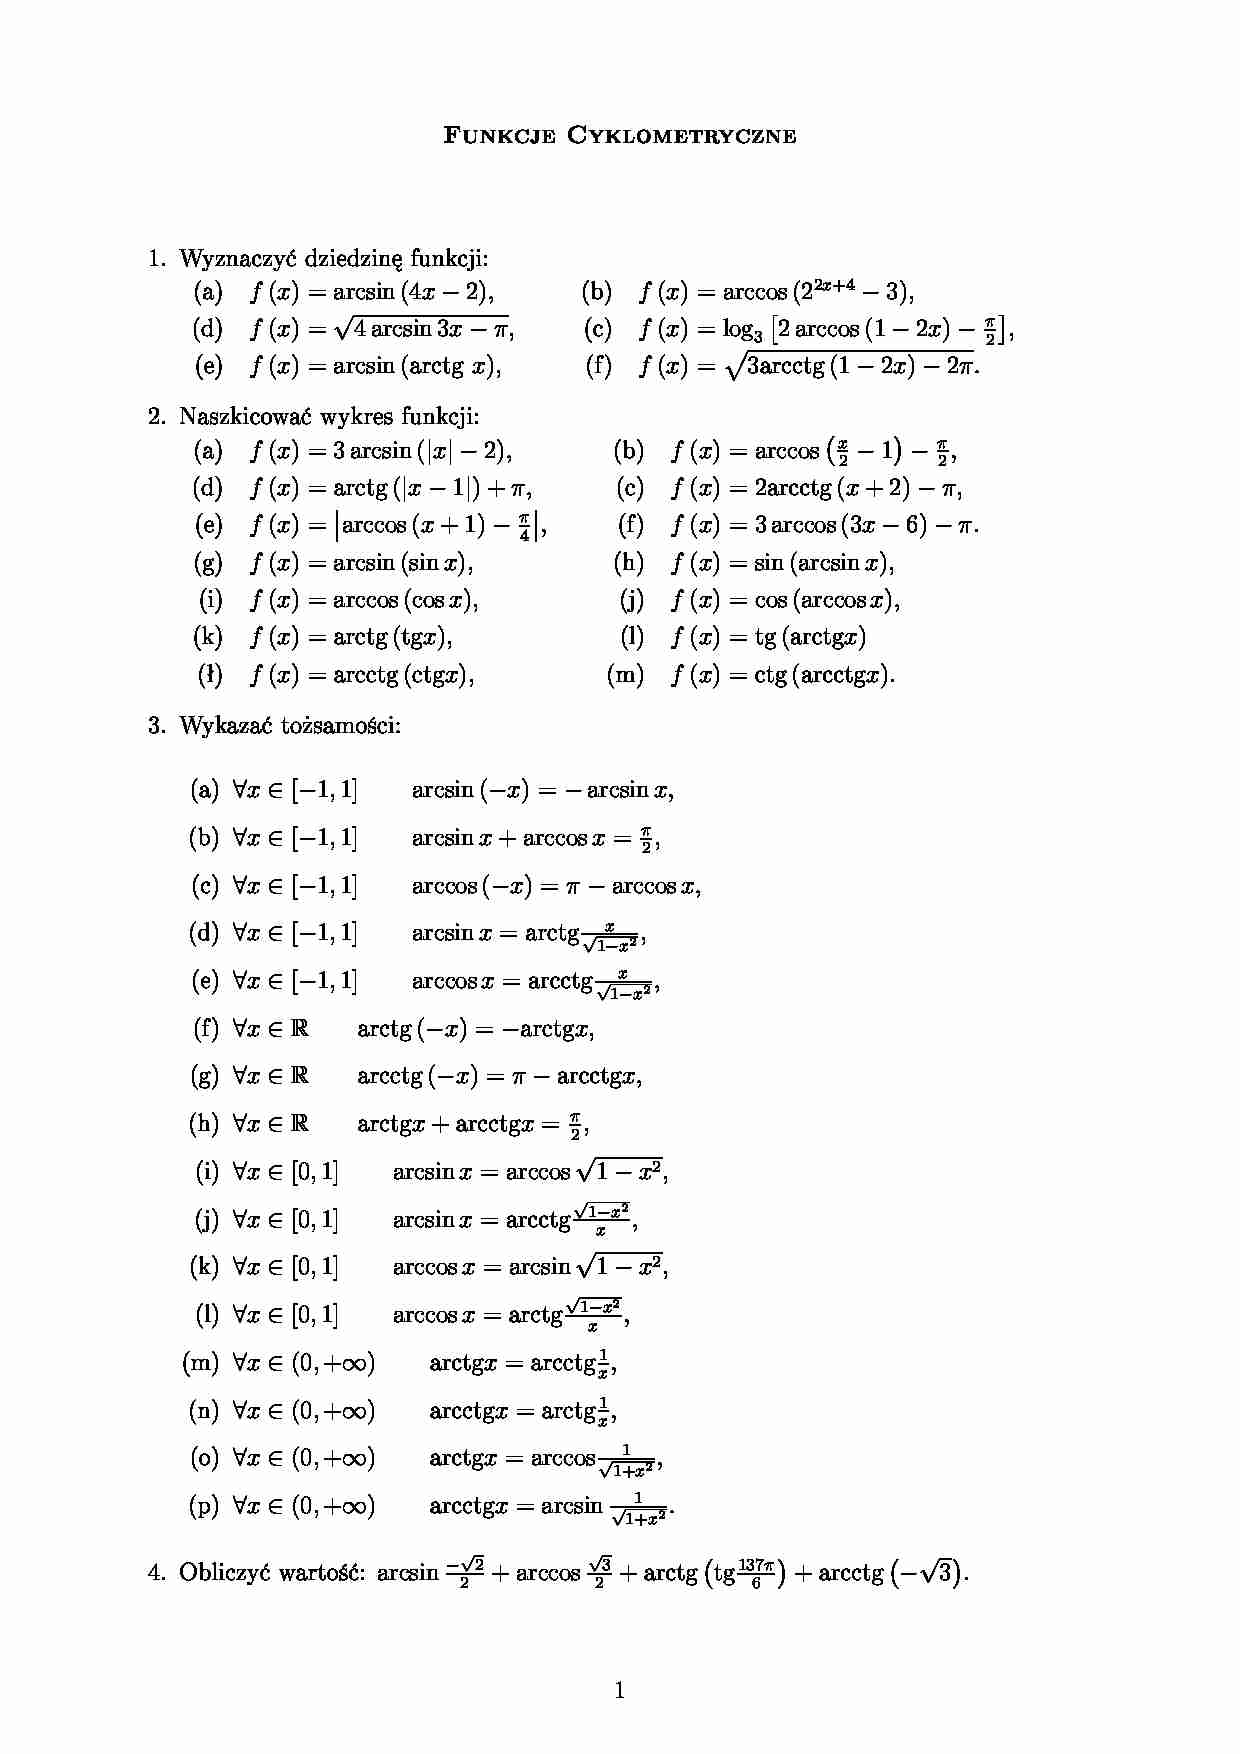 Funkcje cyklometryczne - wyznaczanie dziedziny funkcji - strona 1